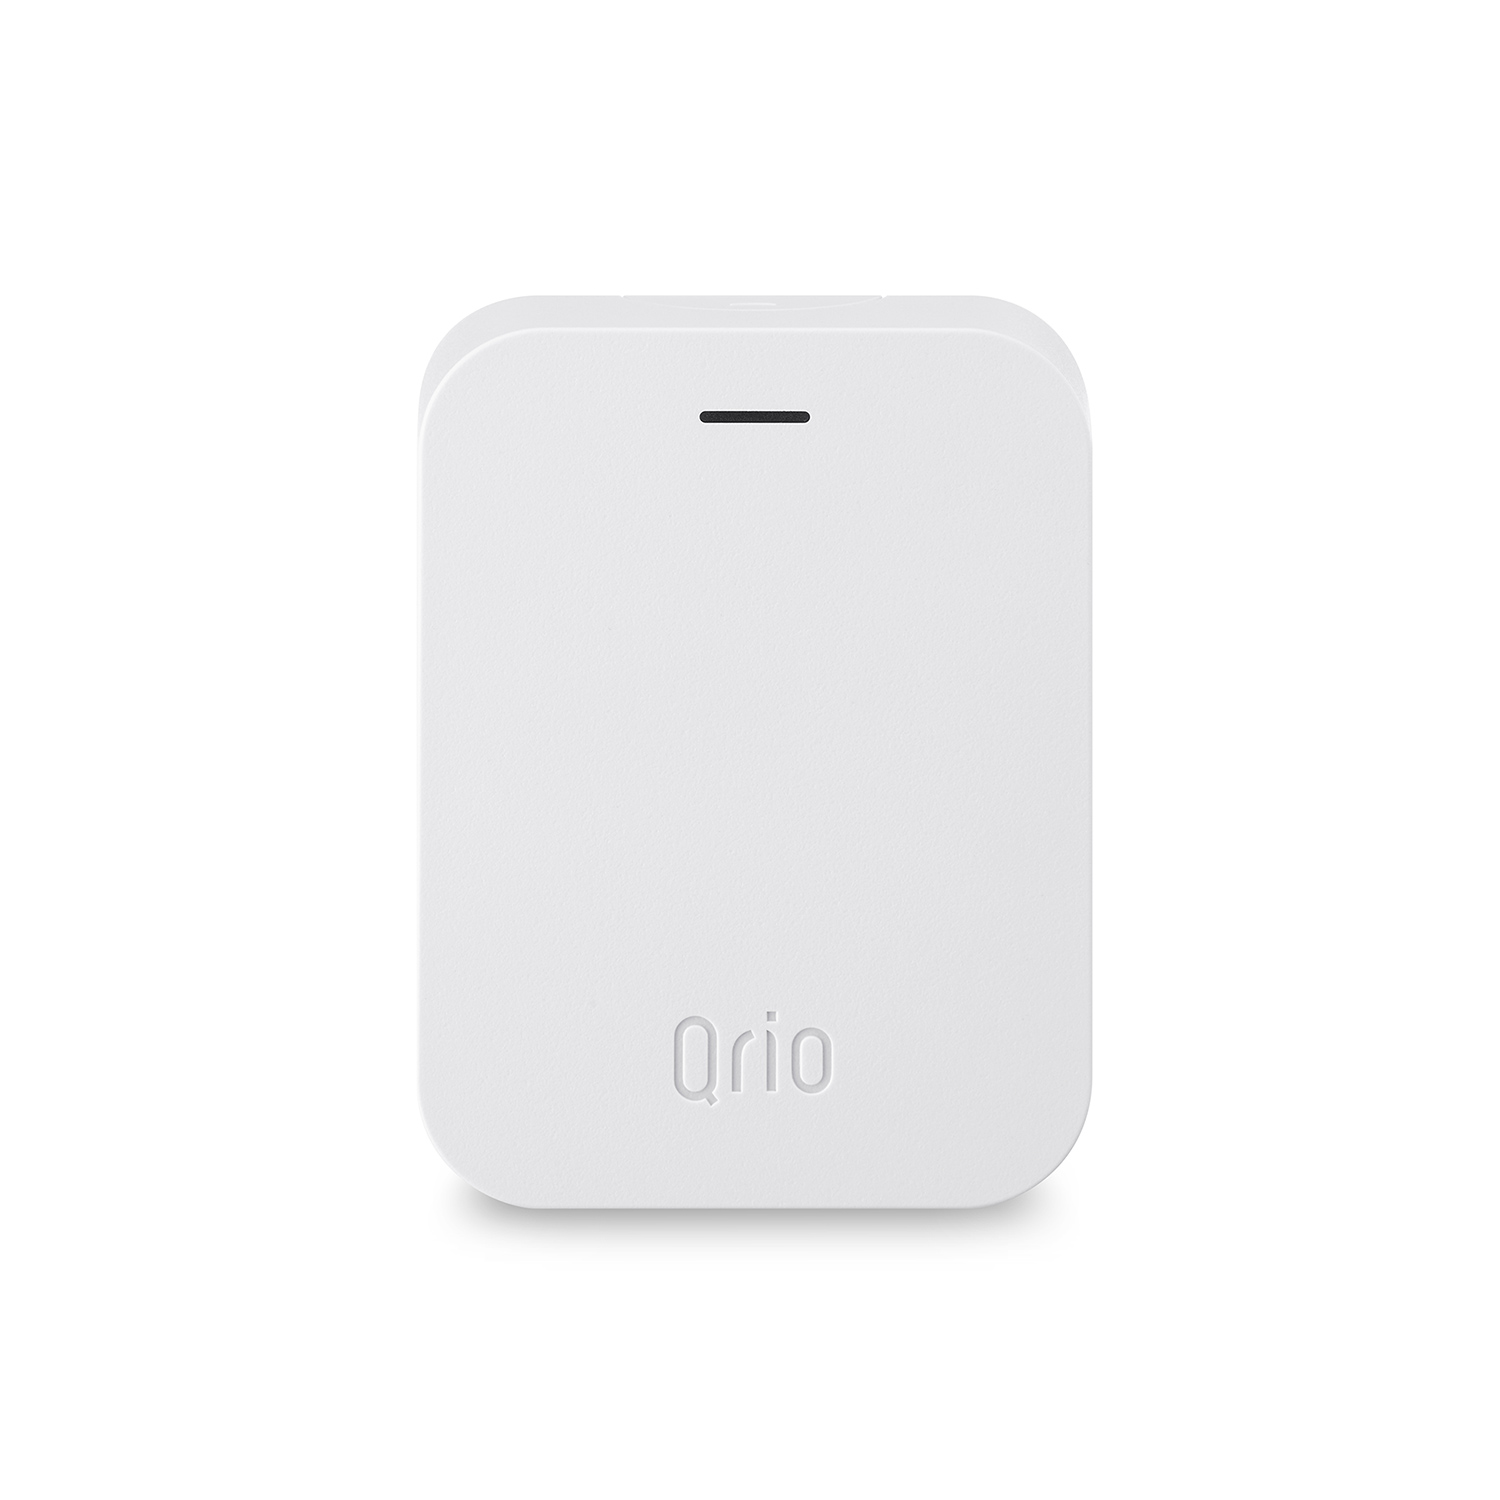 Qrio Hub （キュリオハブ）Q-H1 スマートロックを遠隔操作 | Qrio製品情報・Qrio Store | Qrio（キュリオ）